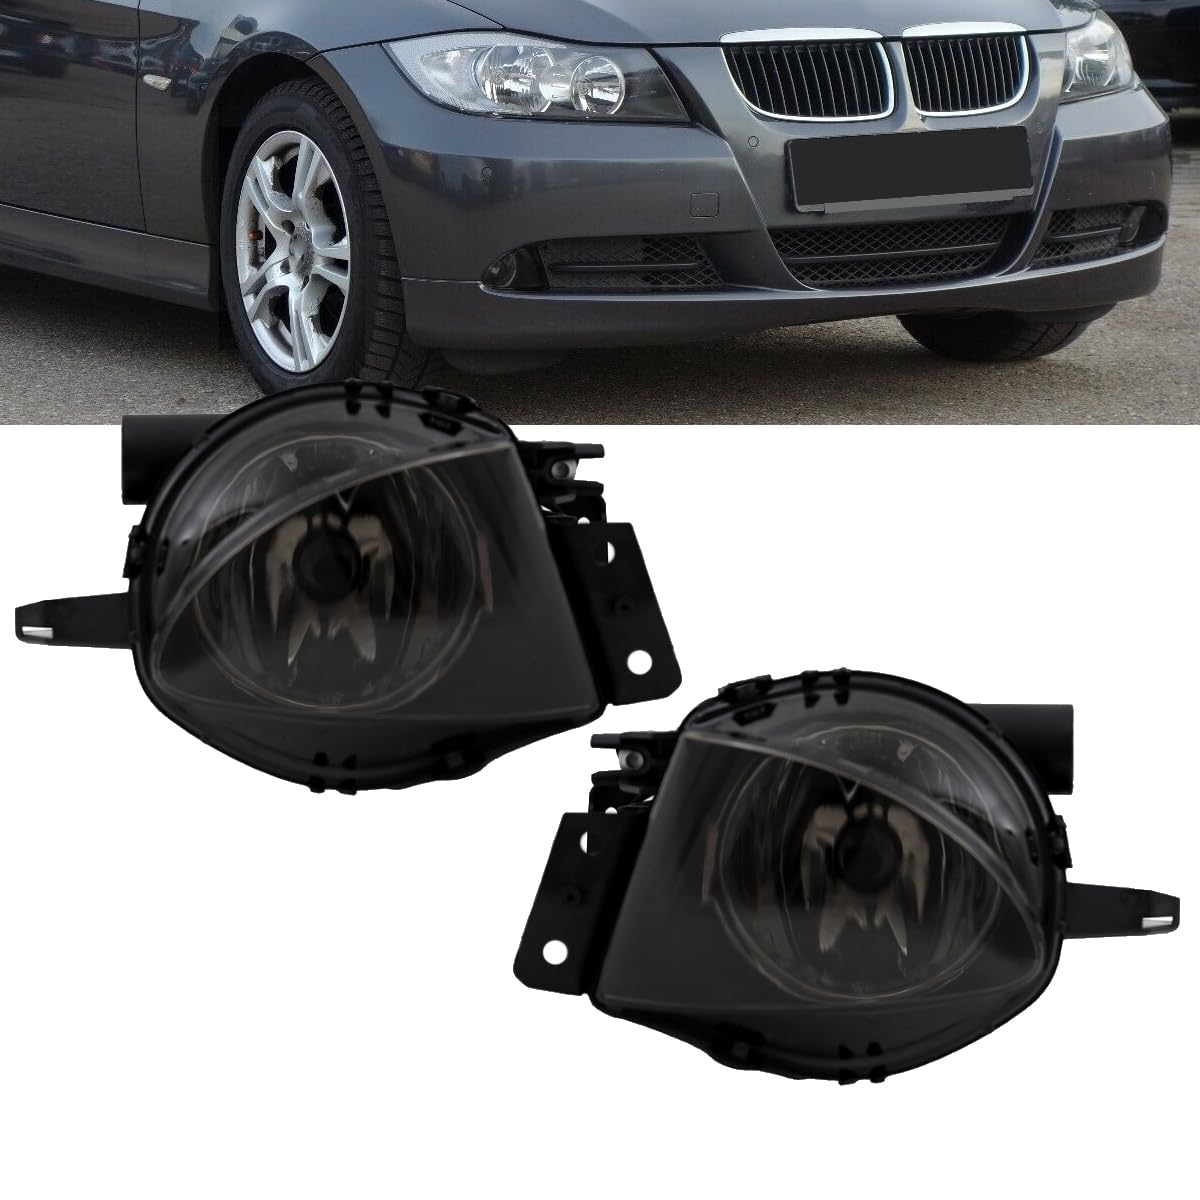 DM Autoteile Set H11 Klarglas Smoke Nebelscheinwerfer kompatibel für BMW 3er E90 E91 Vorfacelift Bj 05-08 3845 von DM Autoteile